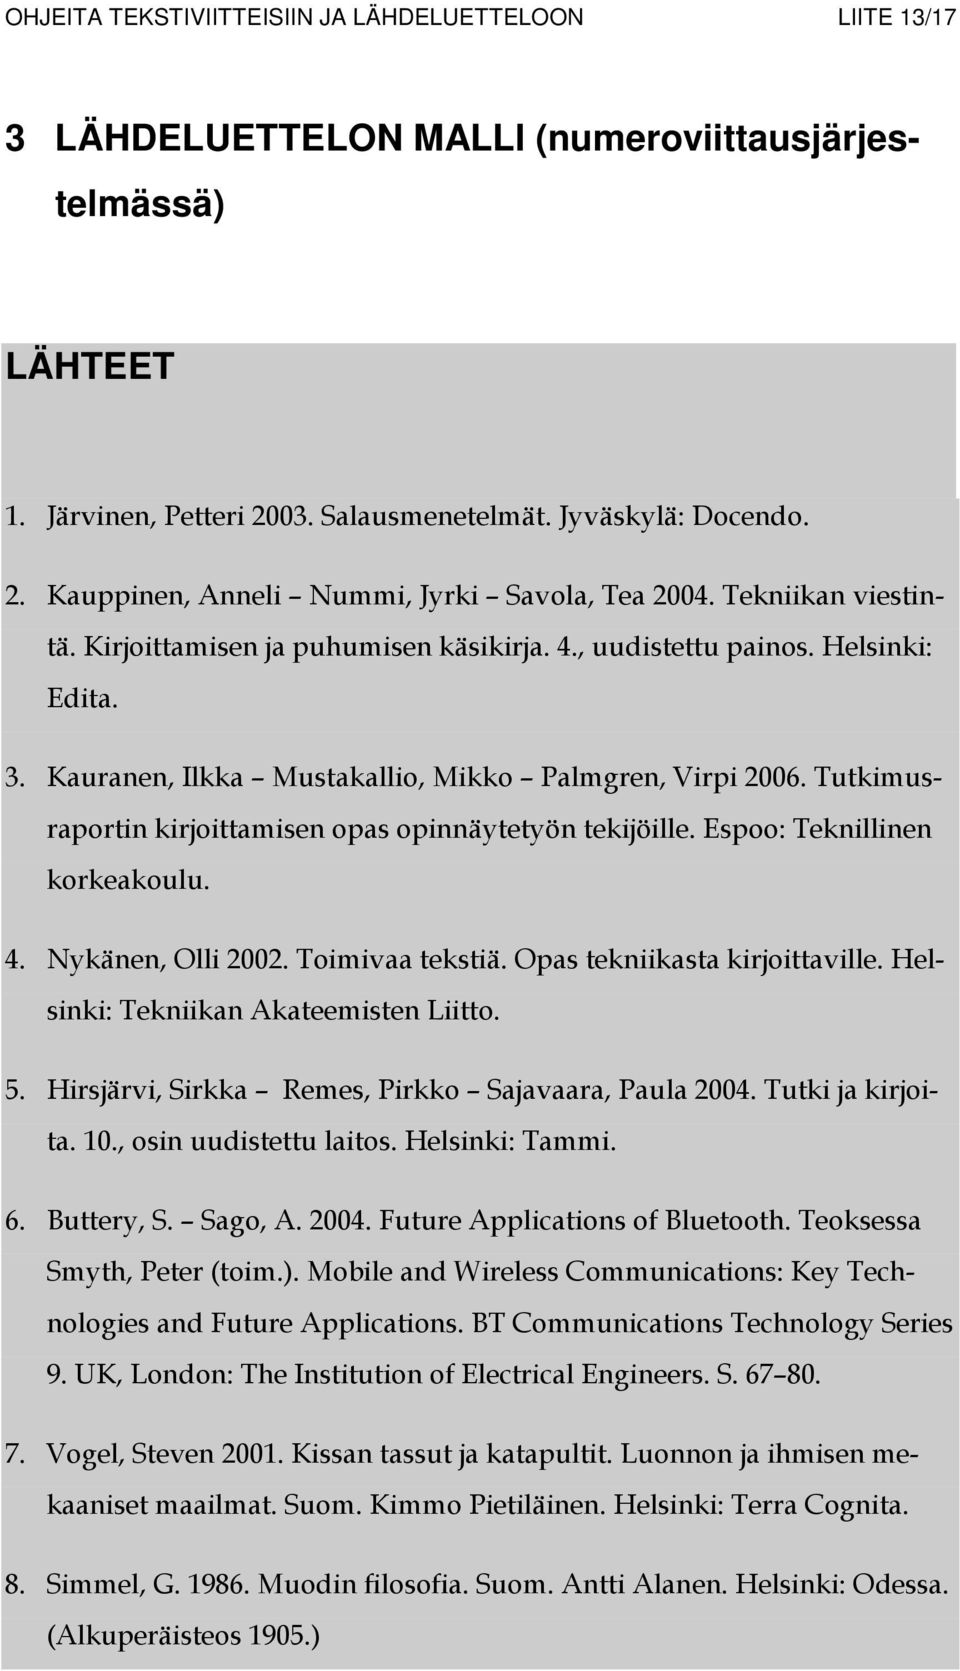 Tutkimusraportin kirjoittamisen opas opinnäytetyön tekijöille. Espoo: Teknillinen korkeakoulu. 4. Nykänen, Olli 2002. Toimivaa tekstiä. Opas tekniikasta kirjoittaville.